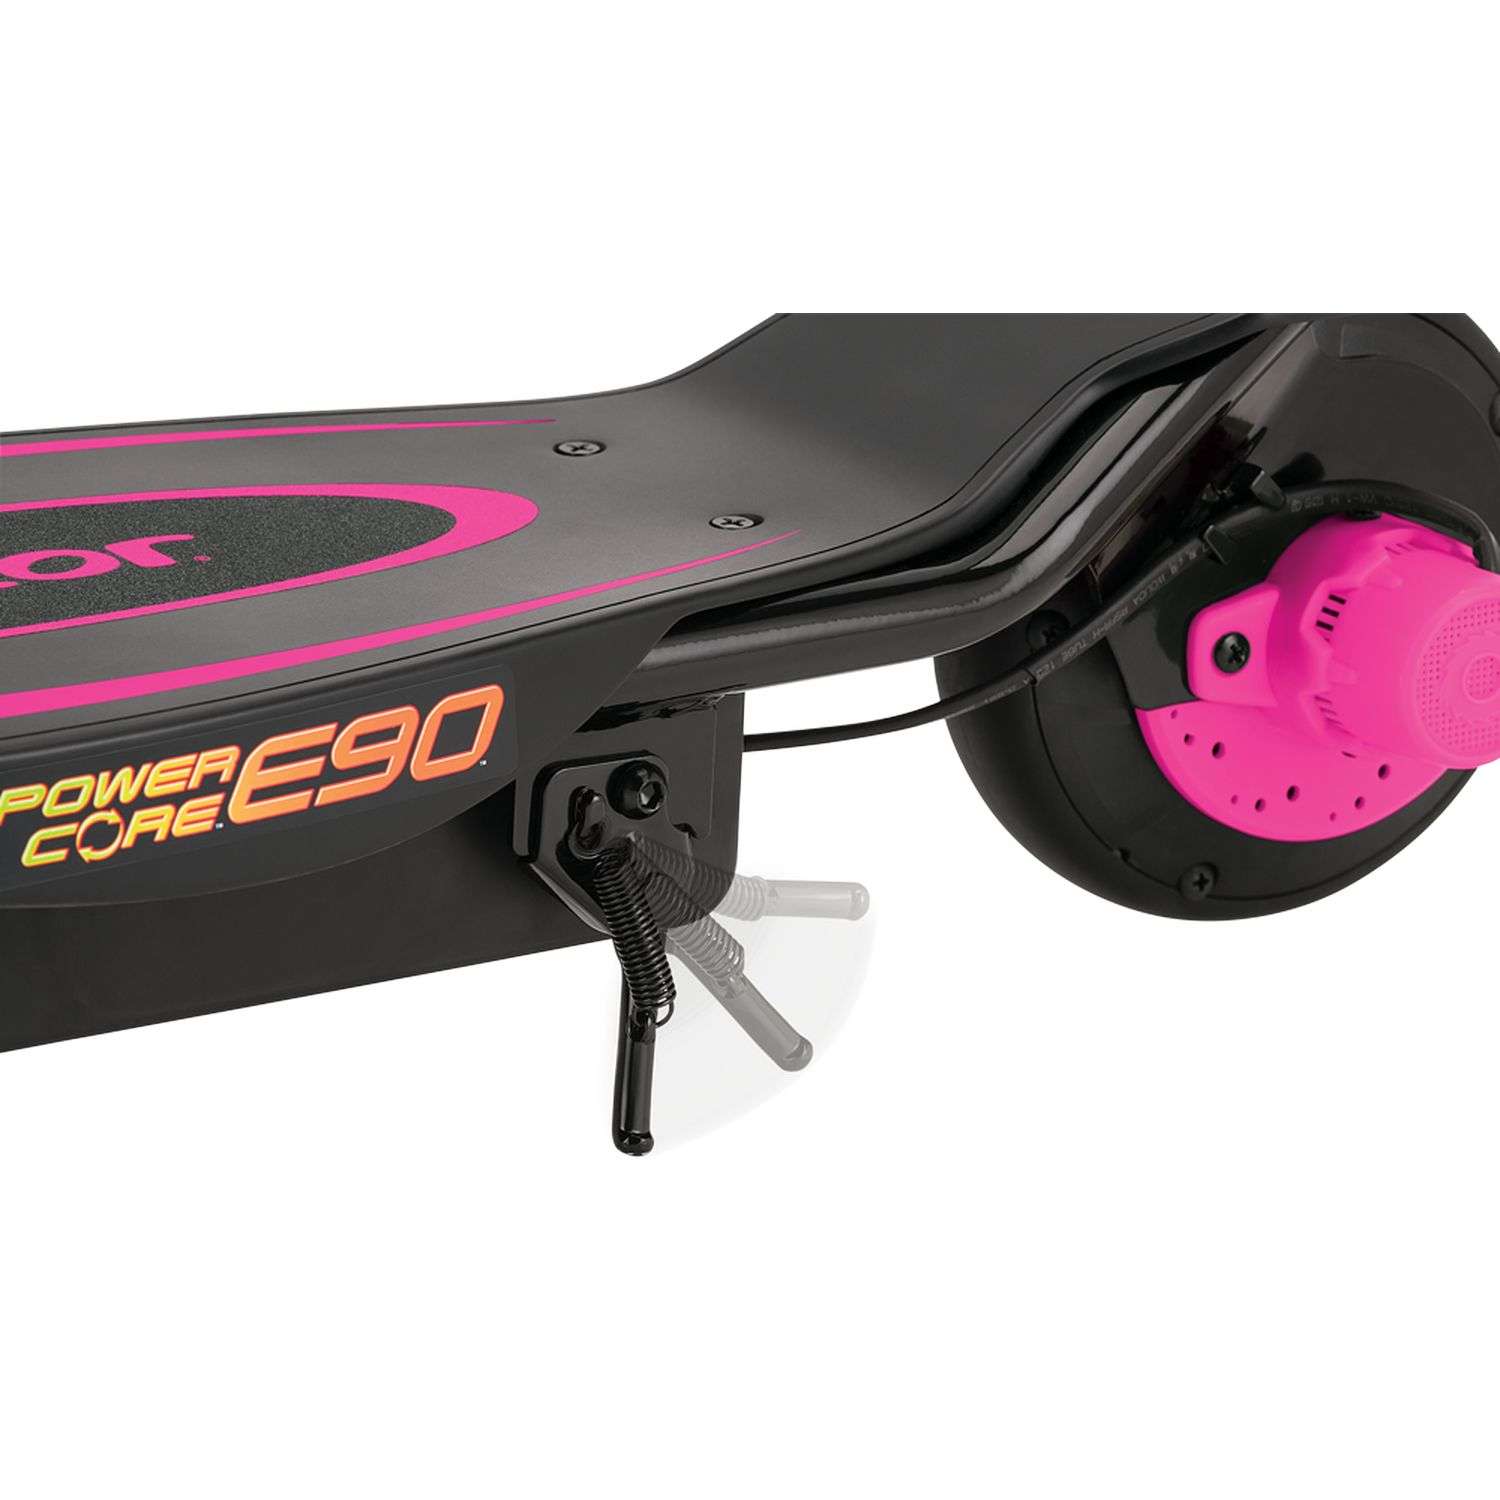 Электросамокат для детей RAZOR Power Core E90 розовый детский электрический с запасом хода до 90 минут - фото 6